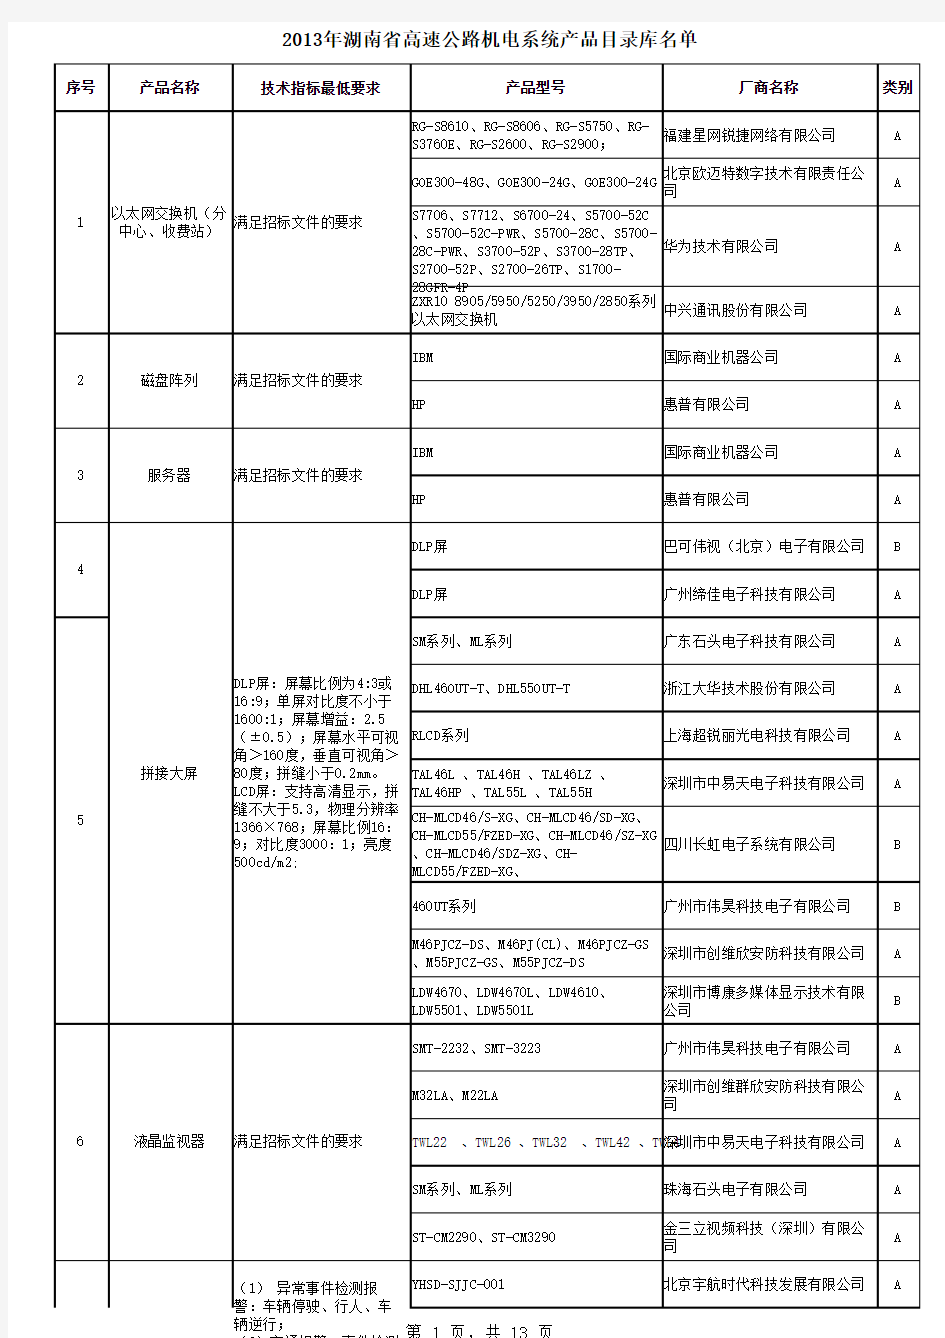 湖南省高速公路机电产品目录库明单(2013年公布)